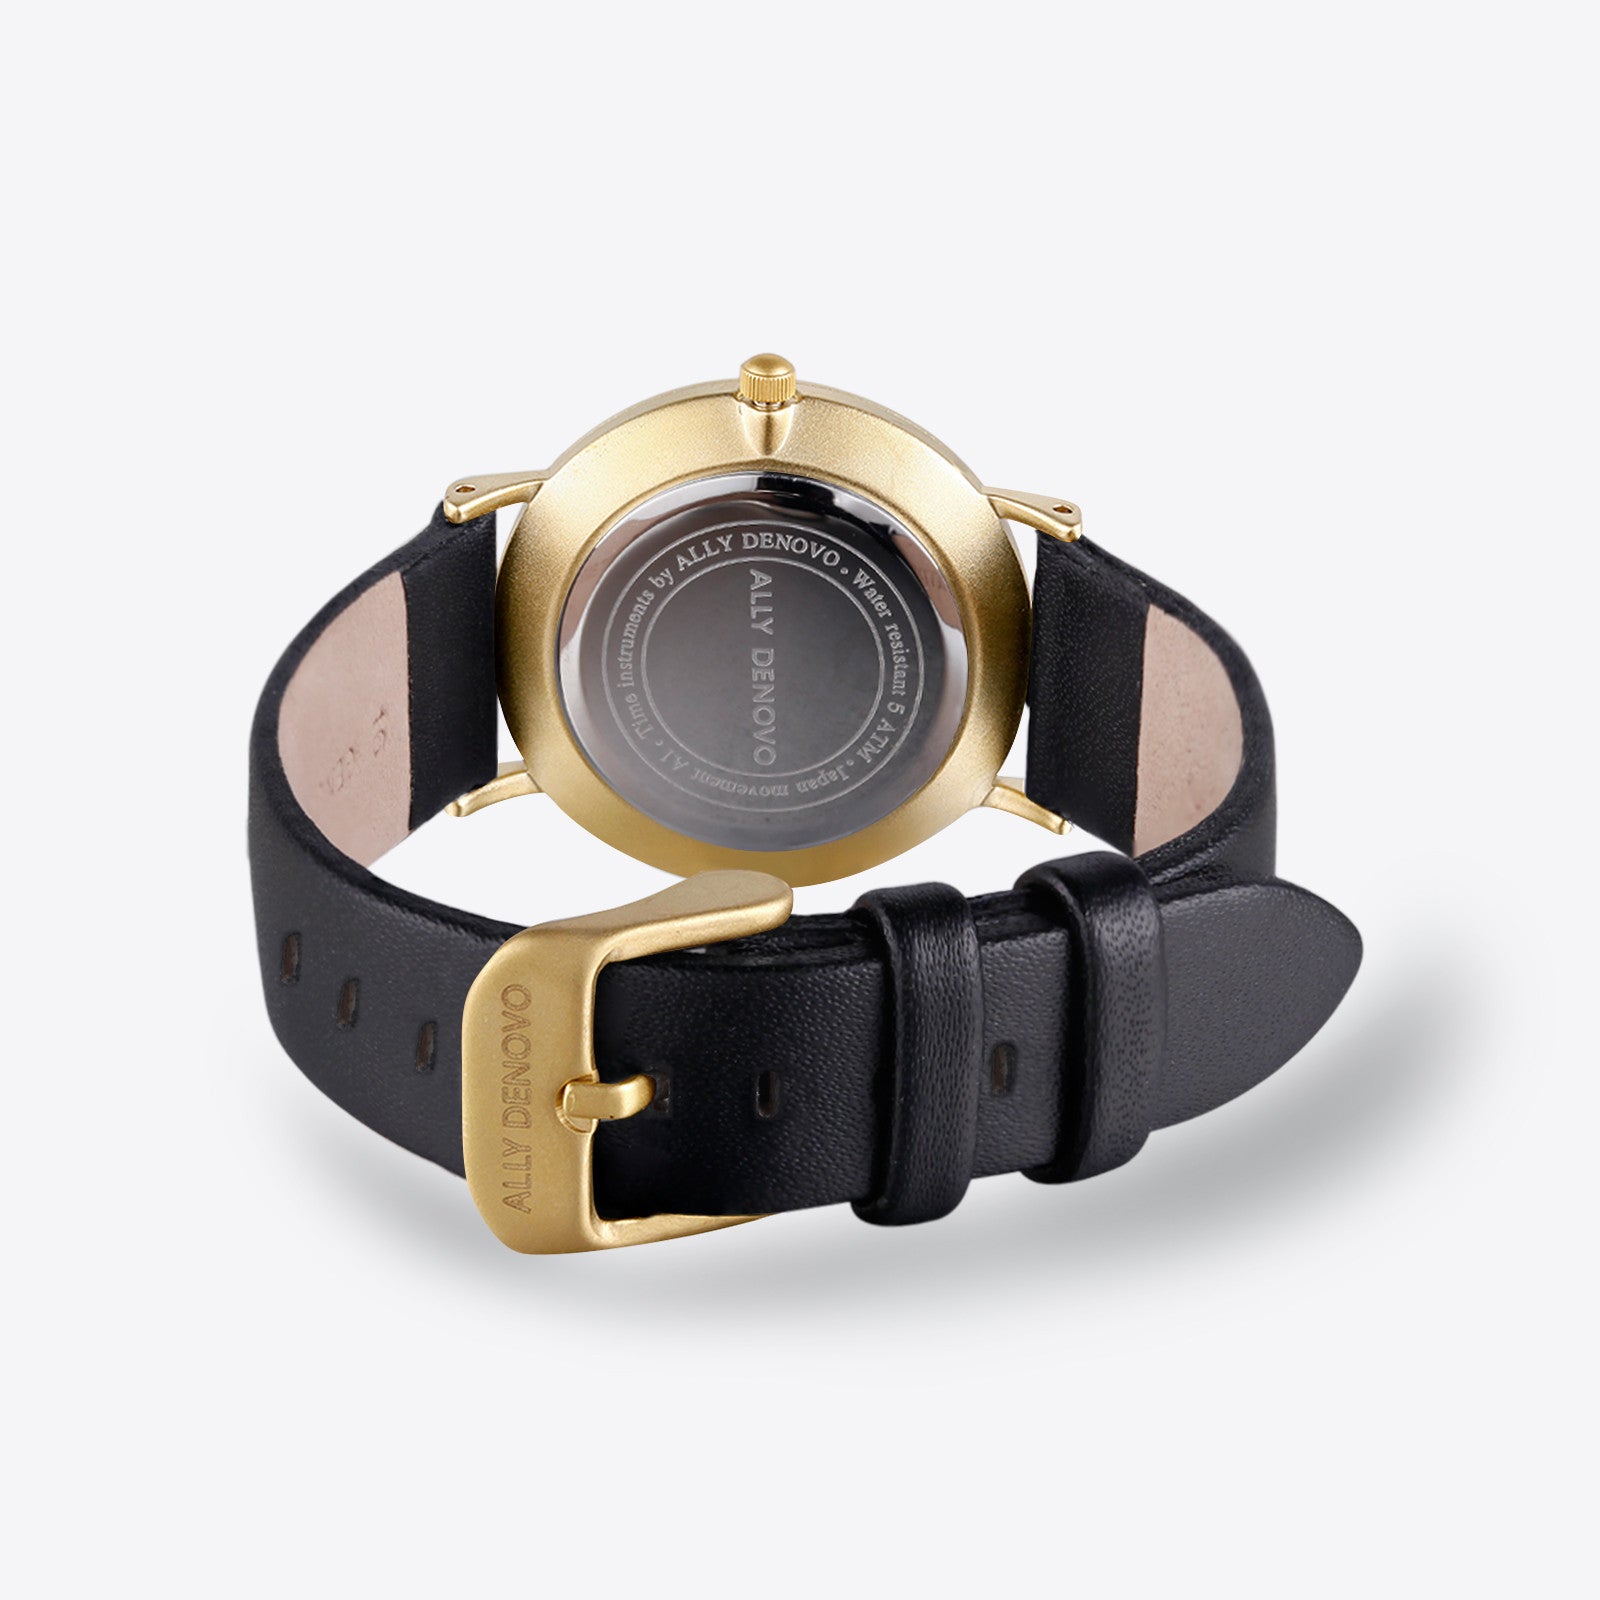 【女款36mm】Carrara Marble皮革腕錶-白大理石金框黑色真皮錶帶 AF5005.6